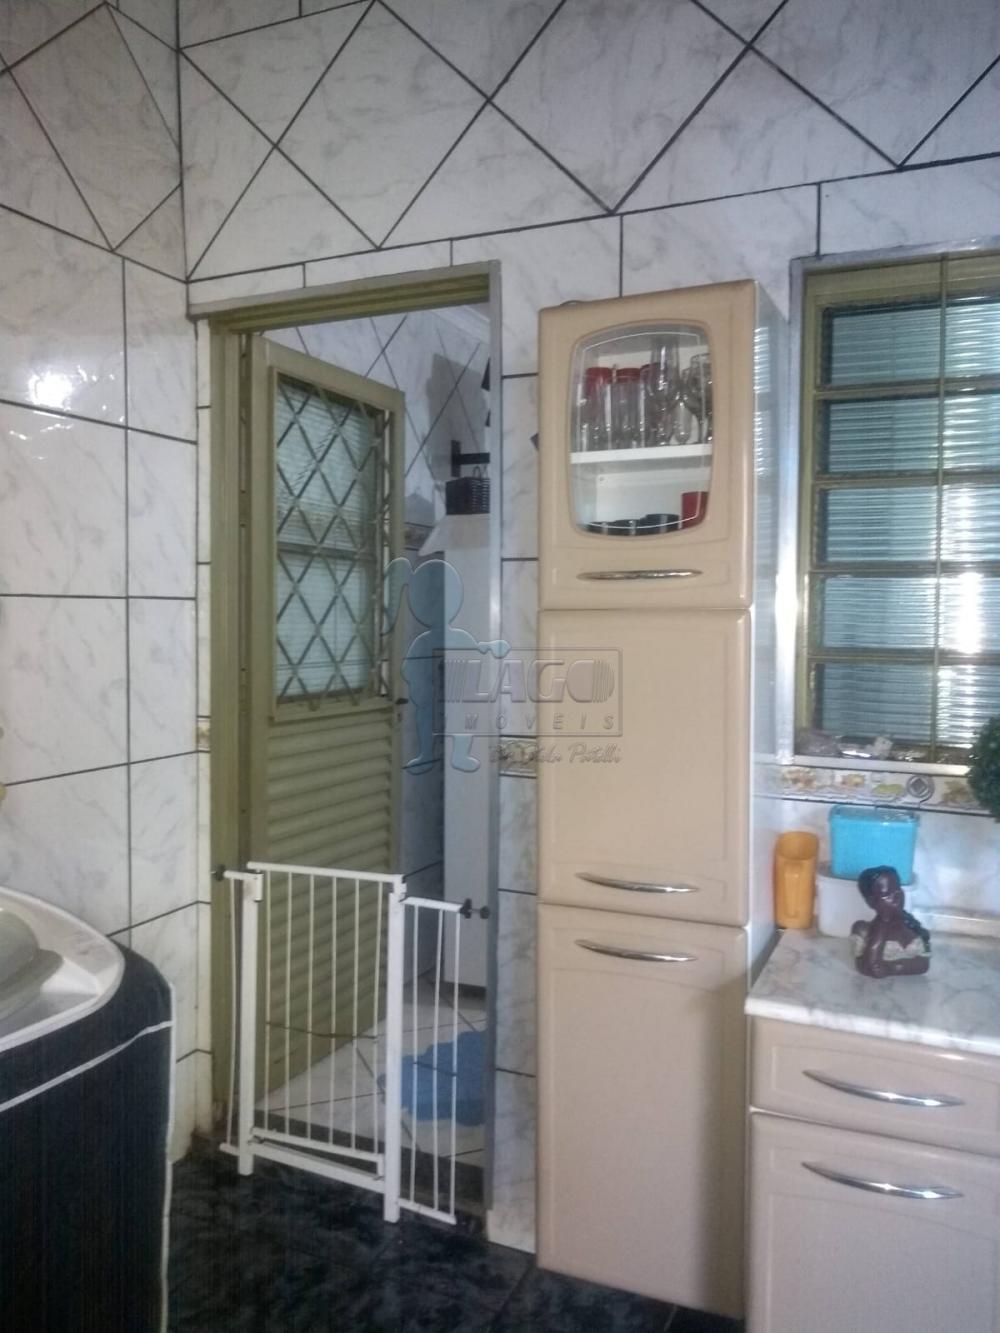 Comprar Casa / Padrão em Ribeirão Preto R$ 424.000,00 - Foto 8